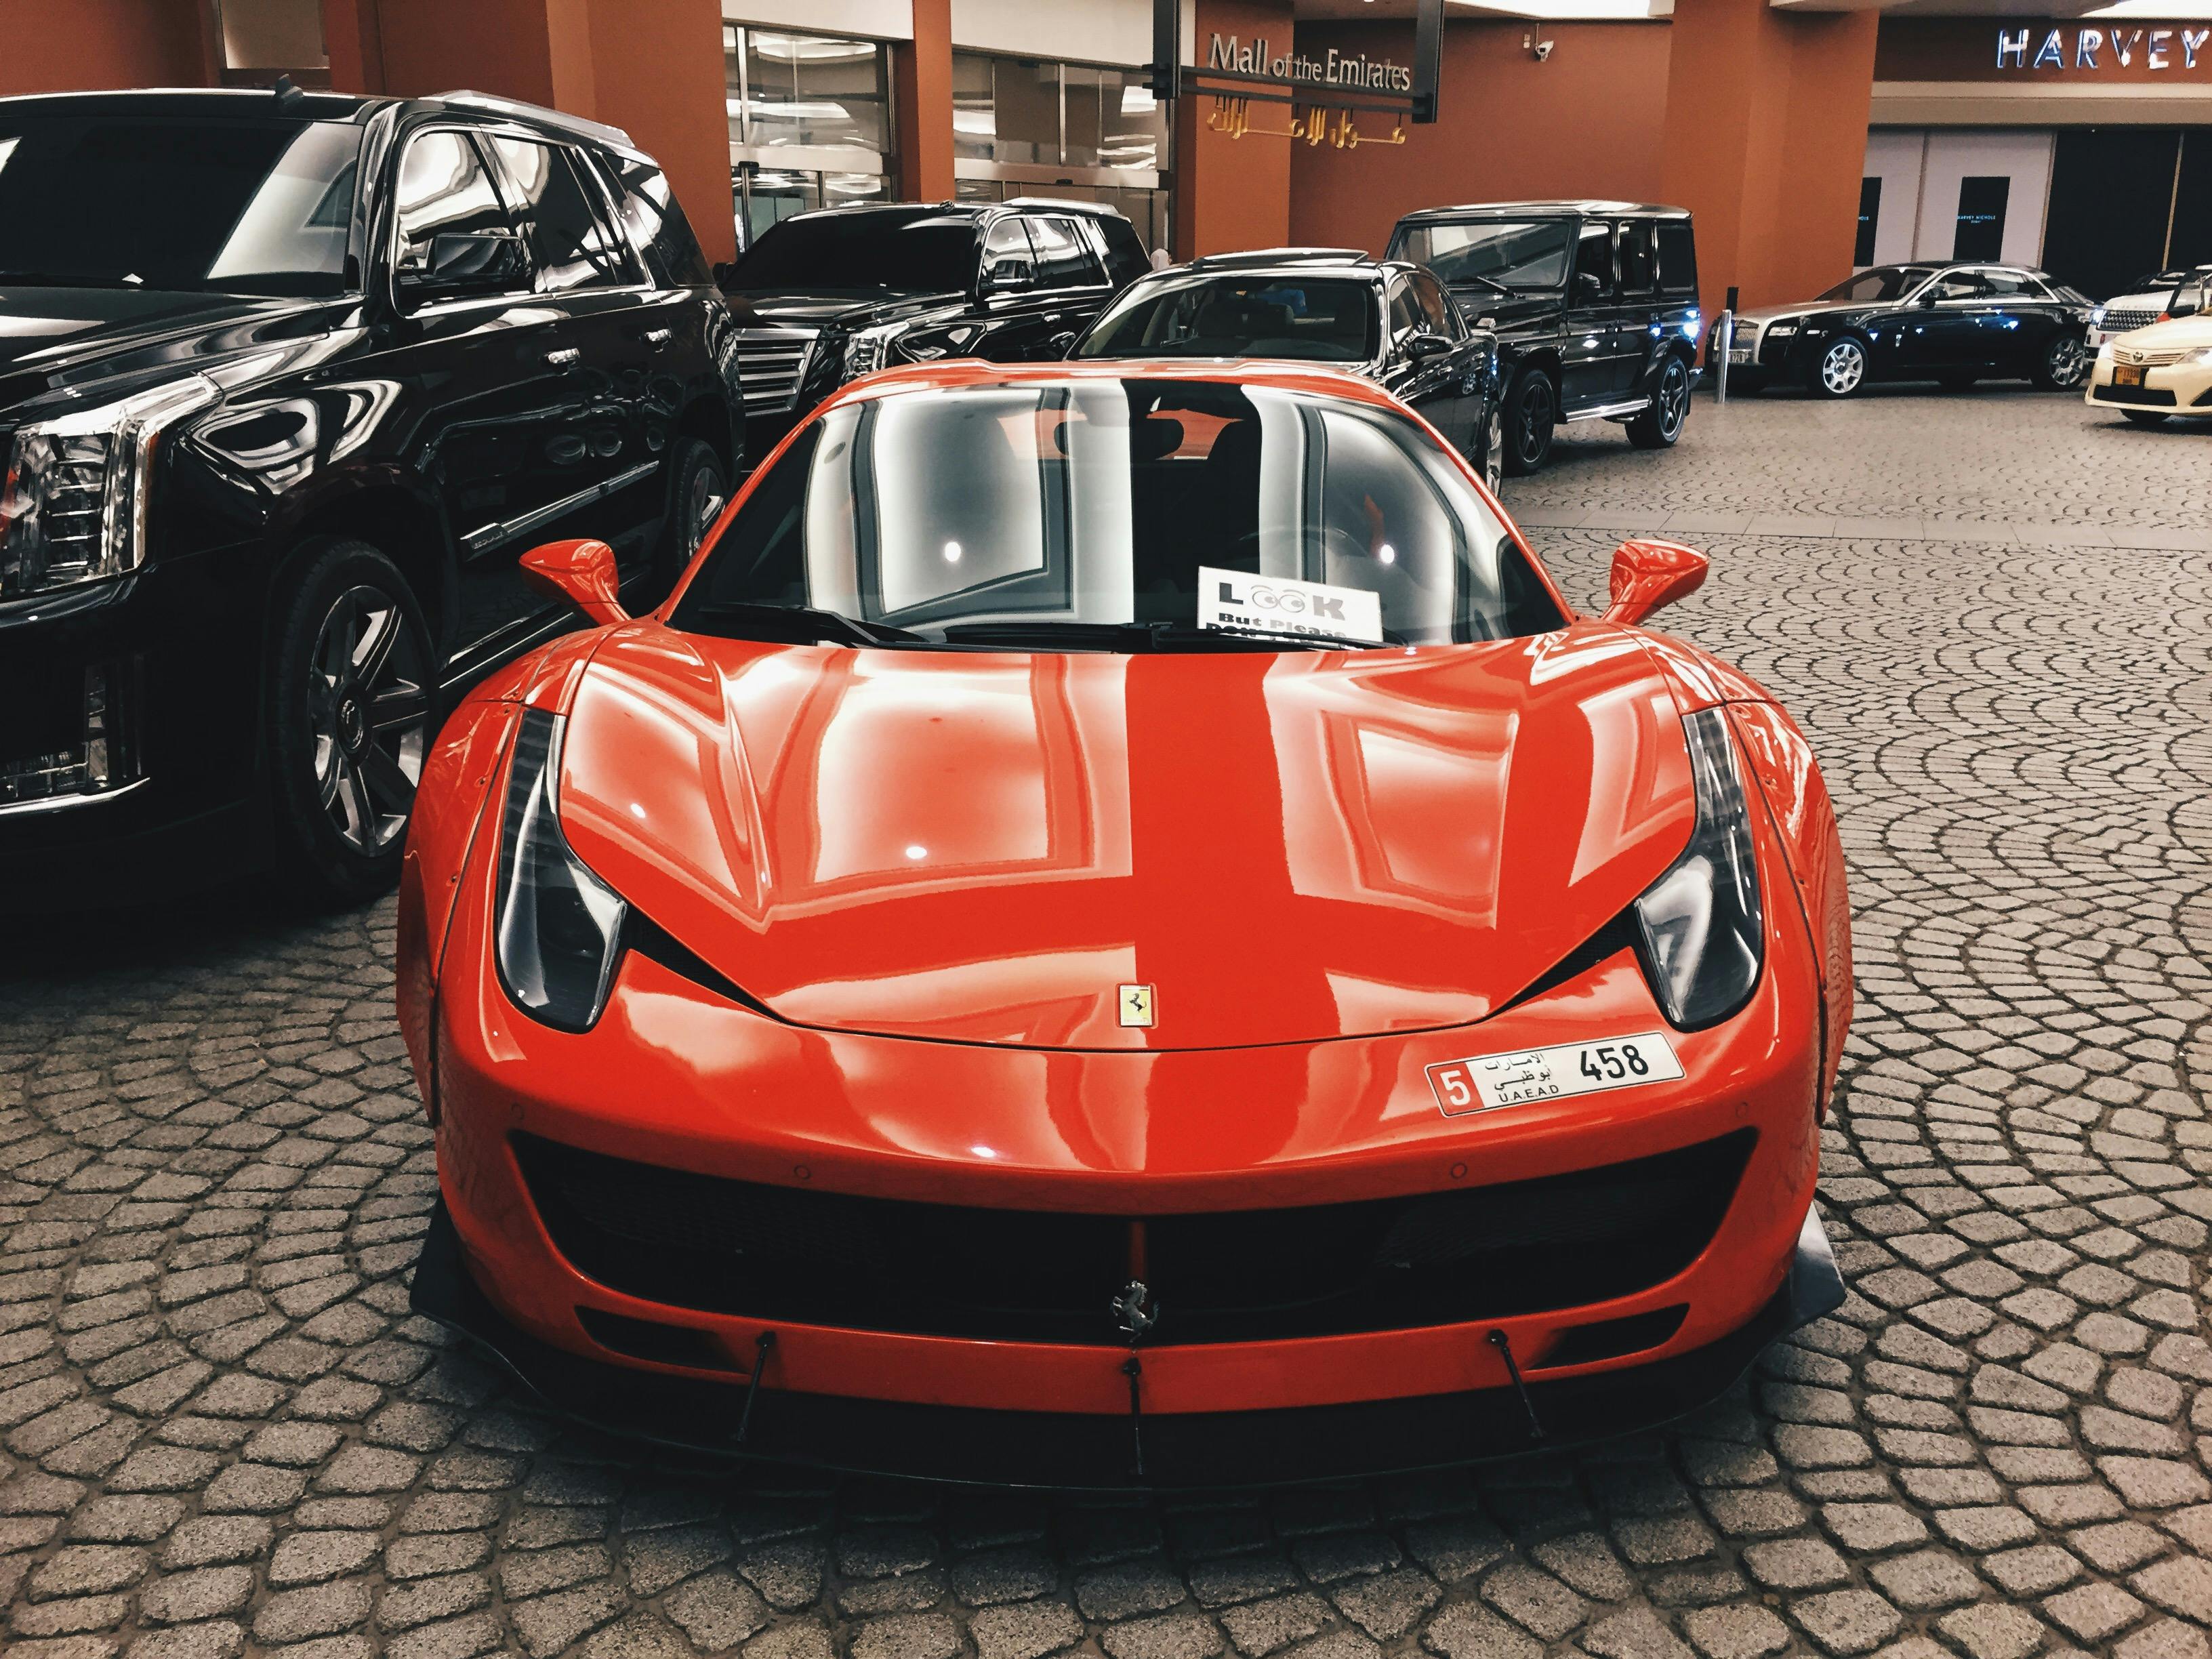 Ferrari photos: Hãy cùng xem những tấm ảnh Ferrari đầy cuốn hút với thiết kế cực kỳ bắt mắt và tốc độ siêu nhanh. Hình ảnh các dòng xe như Ferrari 488 Pista hay Ferrari Portofino sẽ khiến người xem phải vô cùng phấn khích. 